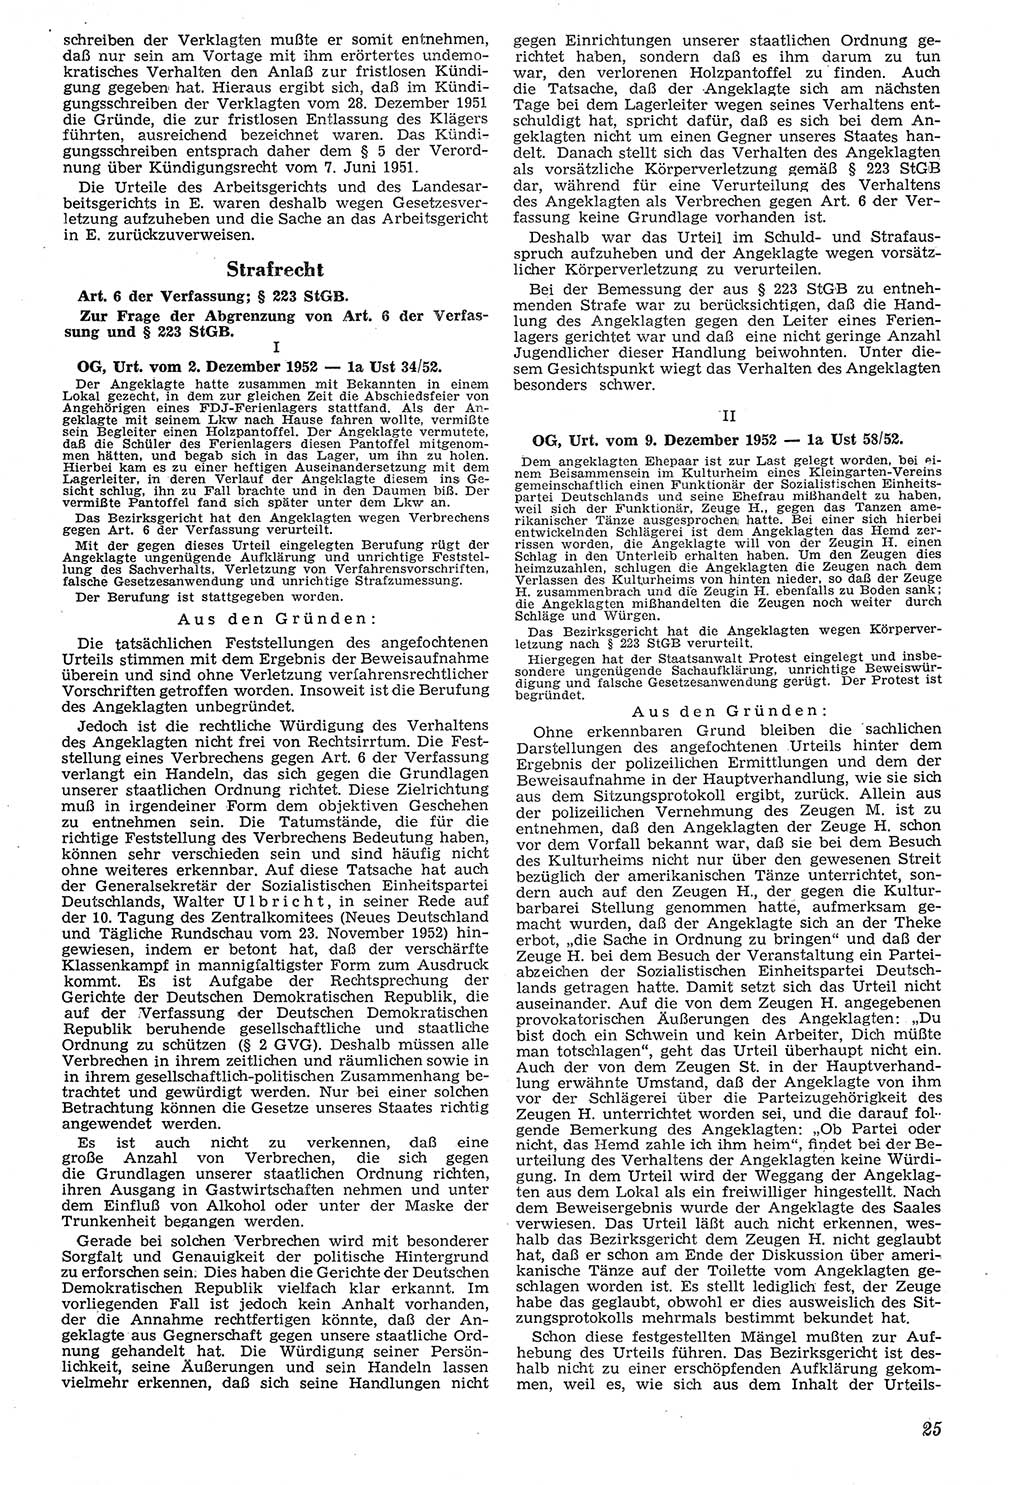 Neue Justiz (NJ), Zeitschrift für Recht und Rechtswissenschaft [Deutsche Demokratische Republik (DDR)], 7. Jahrgang 1953, Seite 25 (NJ DDR 1953, S. 25)